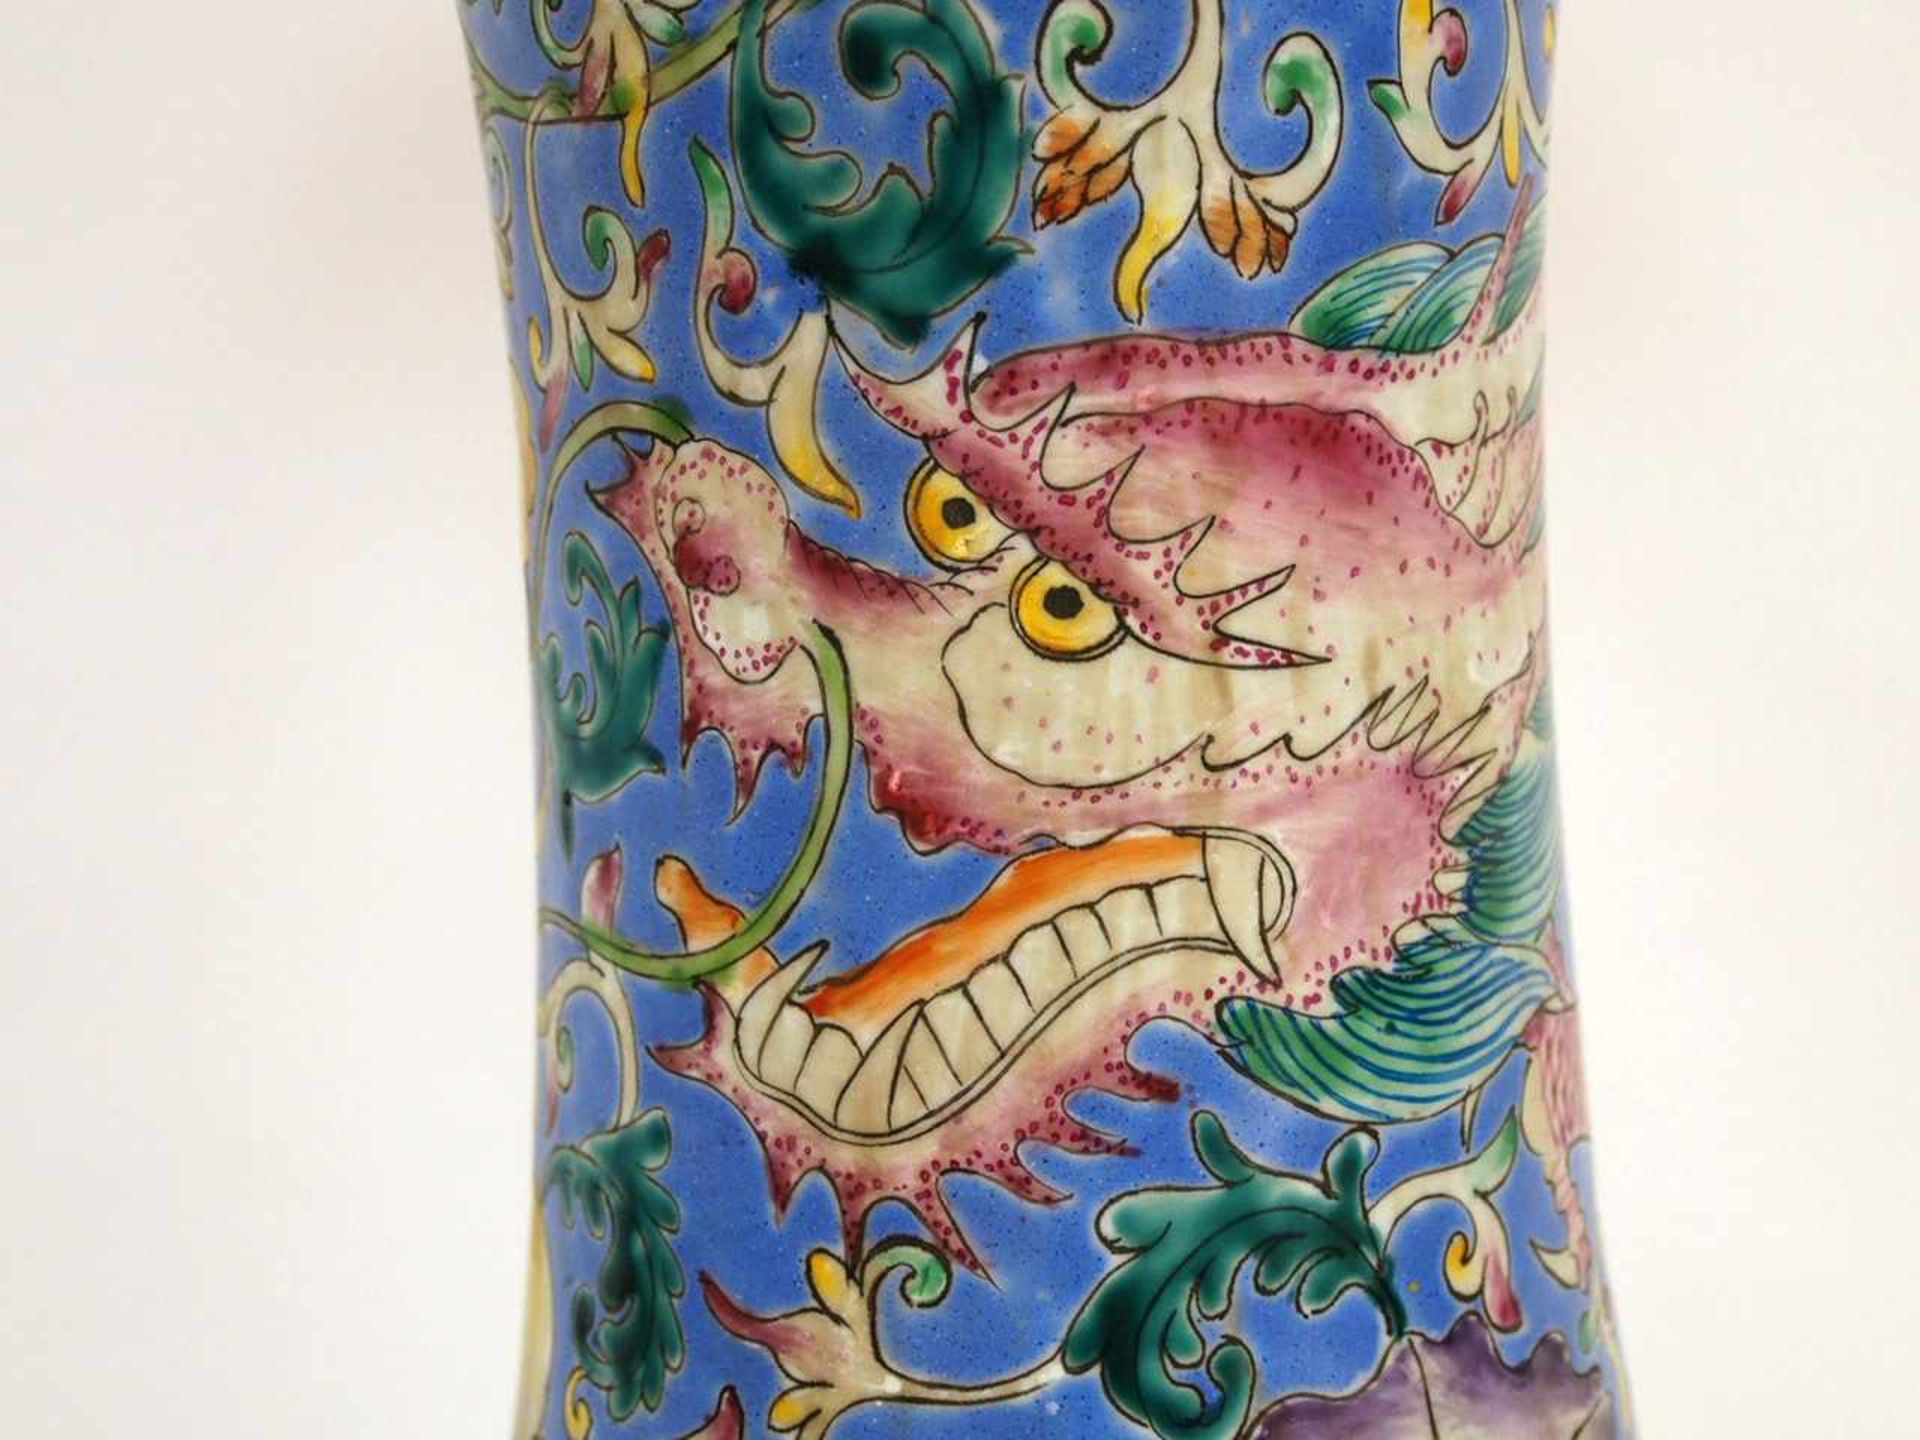 VasePorzellan, Drachenmalerei, bodenseitig gemarkt, Höhe 80 cm, China, um 1900 - Bild 2 aus 6